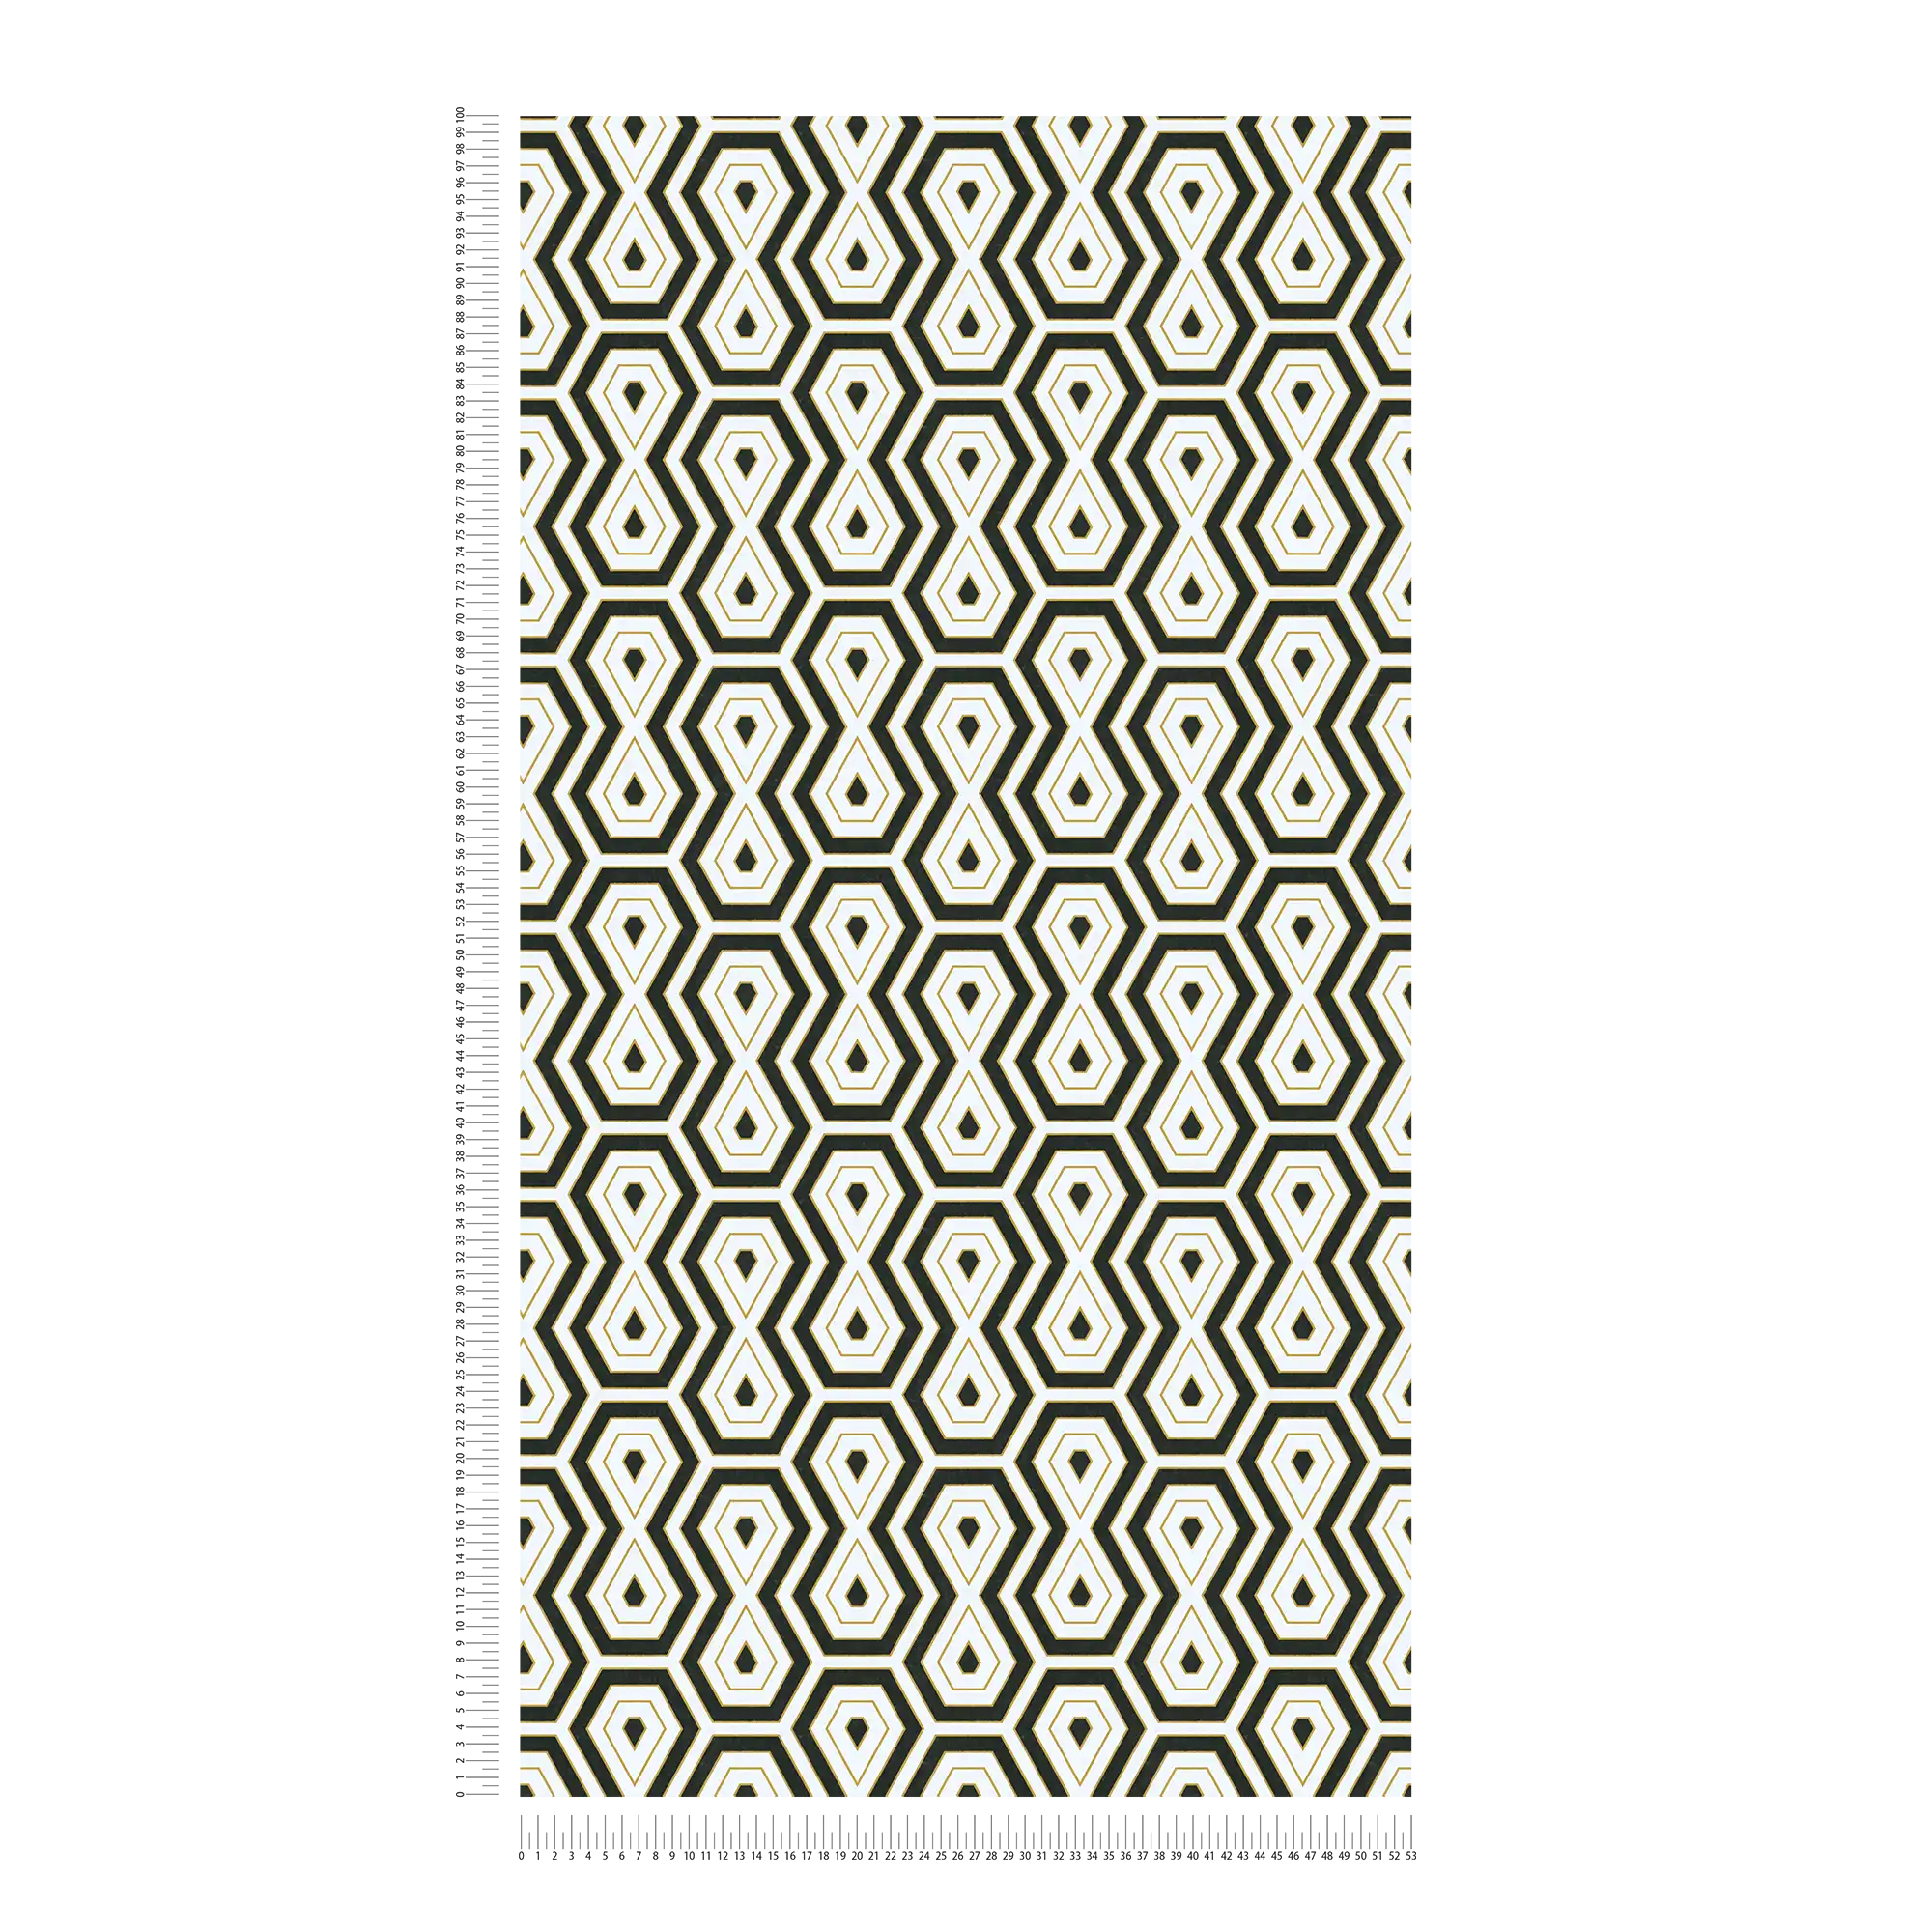             Schwarz-Weiß Tapete mit Gold-Akzent & Retro Grafikdesign
        